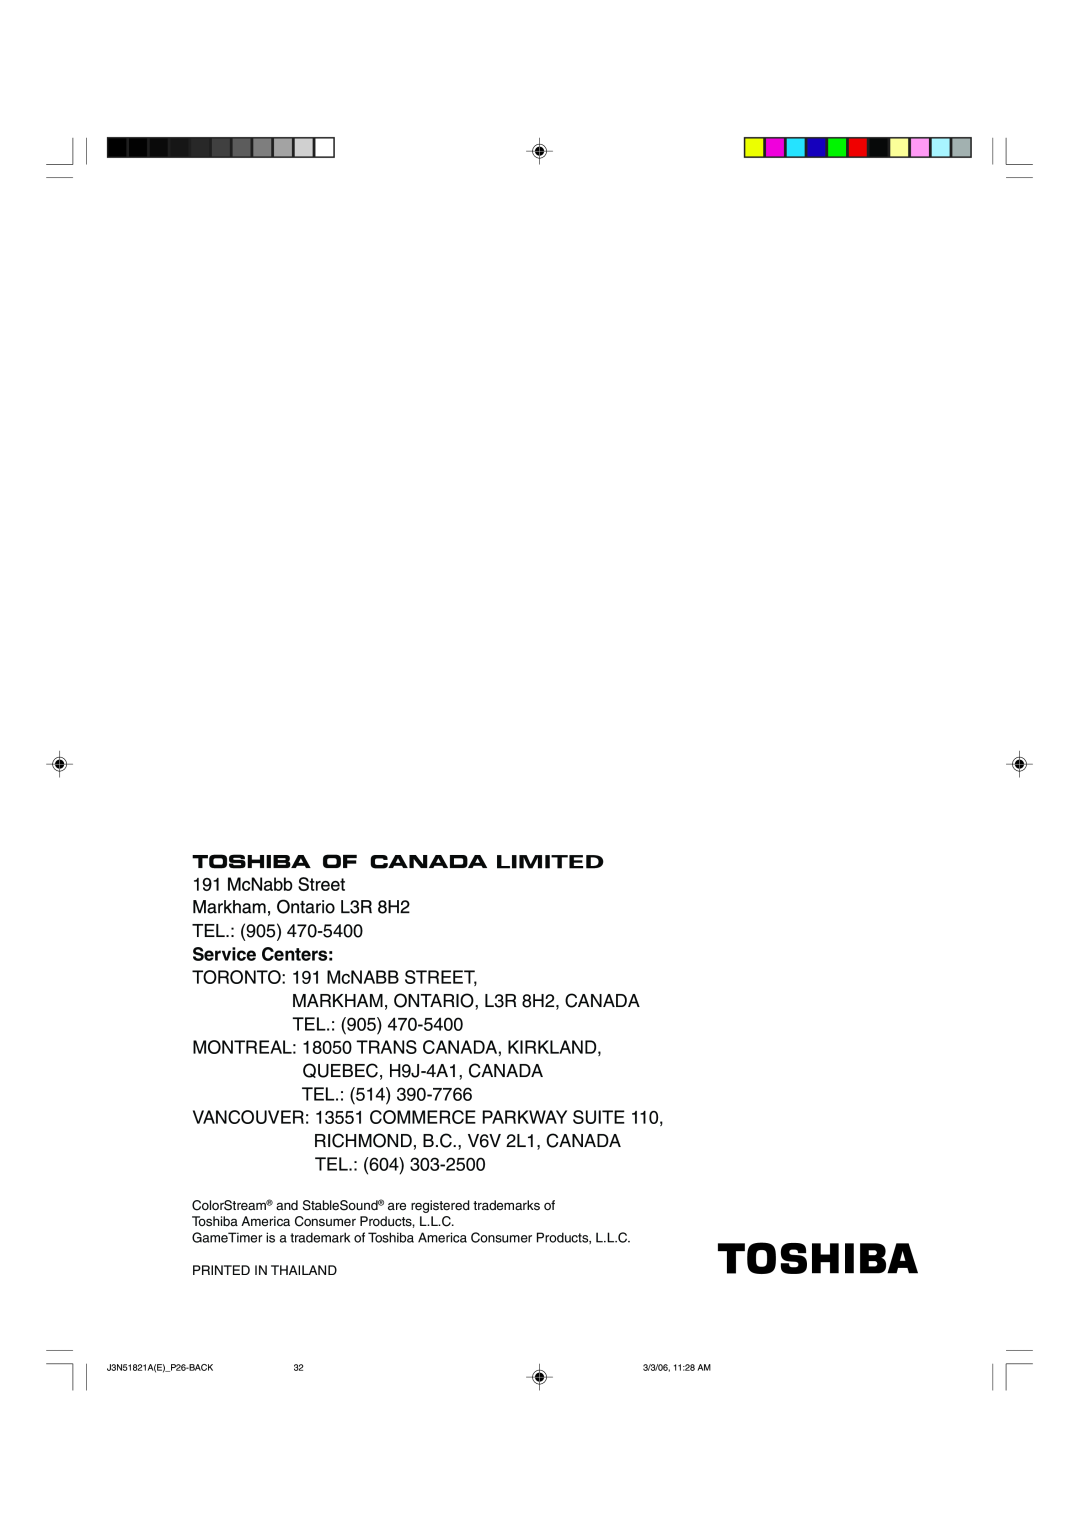 Toshiba 32A36C appendix Service Centers 